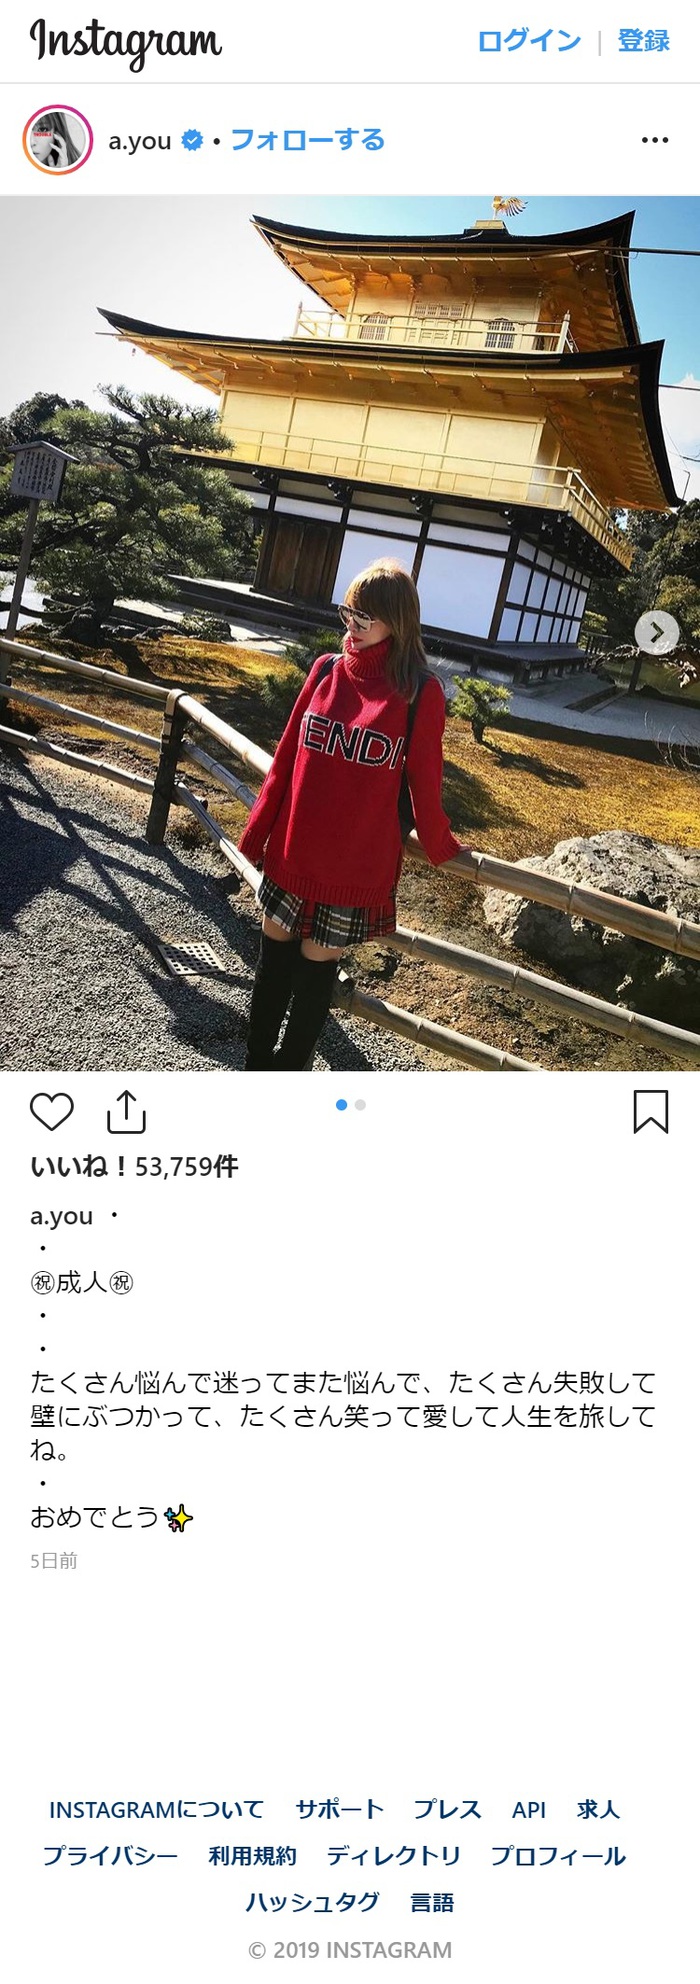 浜崎あゆみ、インスタのステージ写真と英文コメントにツッコミの嵐